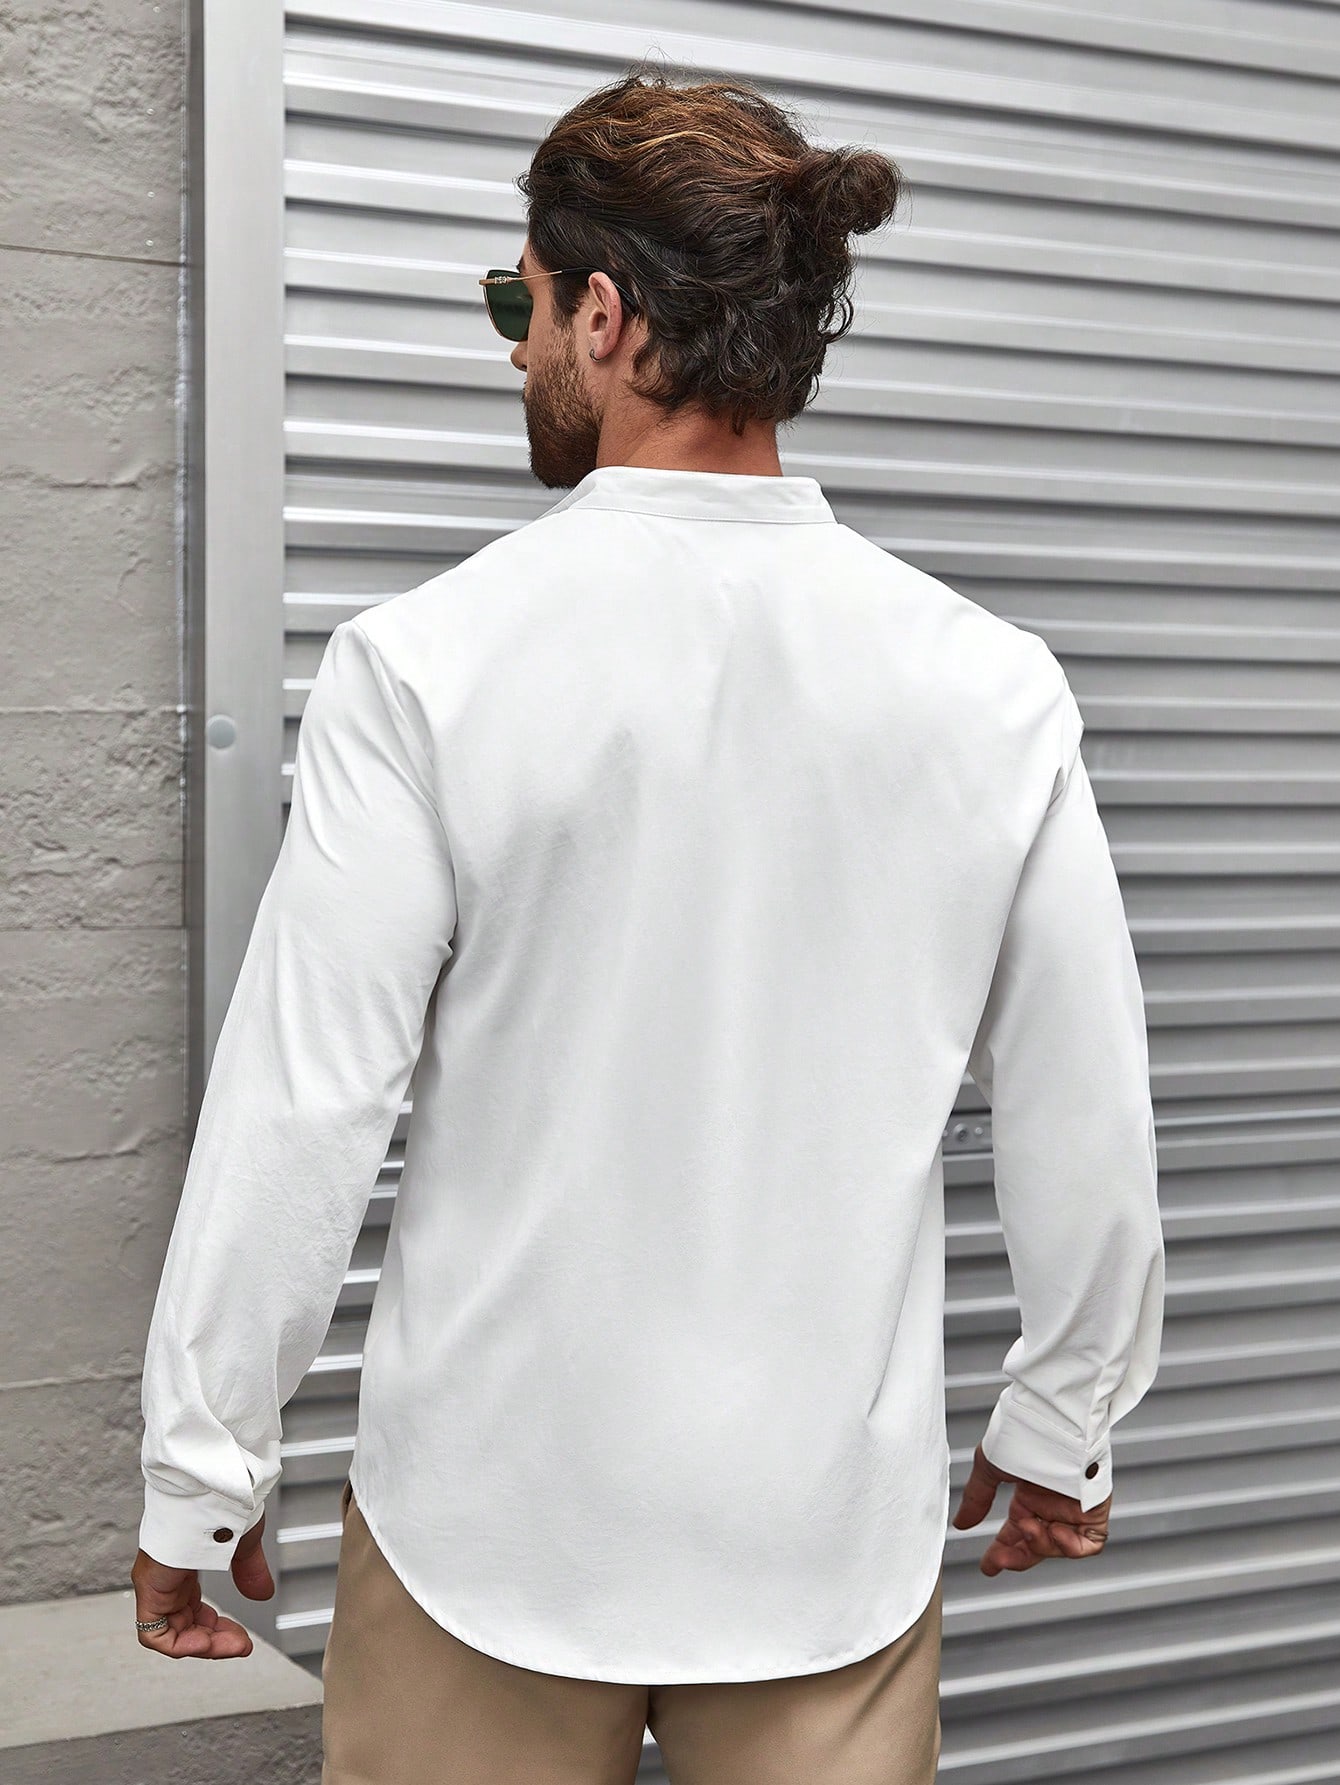 Мужская рубашка с воротником-стойкой и длинным рукавом Manfinity Homme, белый рубашка мужская льняная с длинным рукавом мешковатая блуза с принтом в полоску с воротником стойкой на пуговицах топ мужская одежда лето